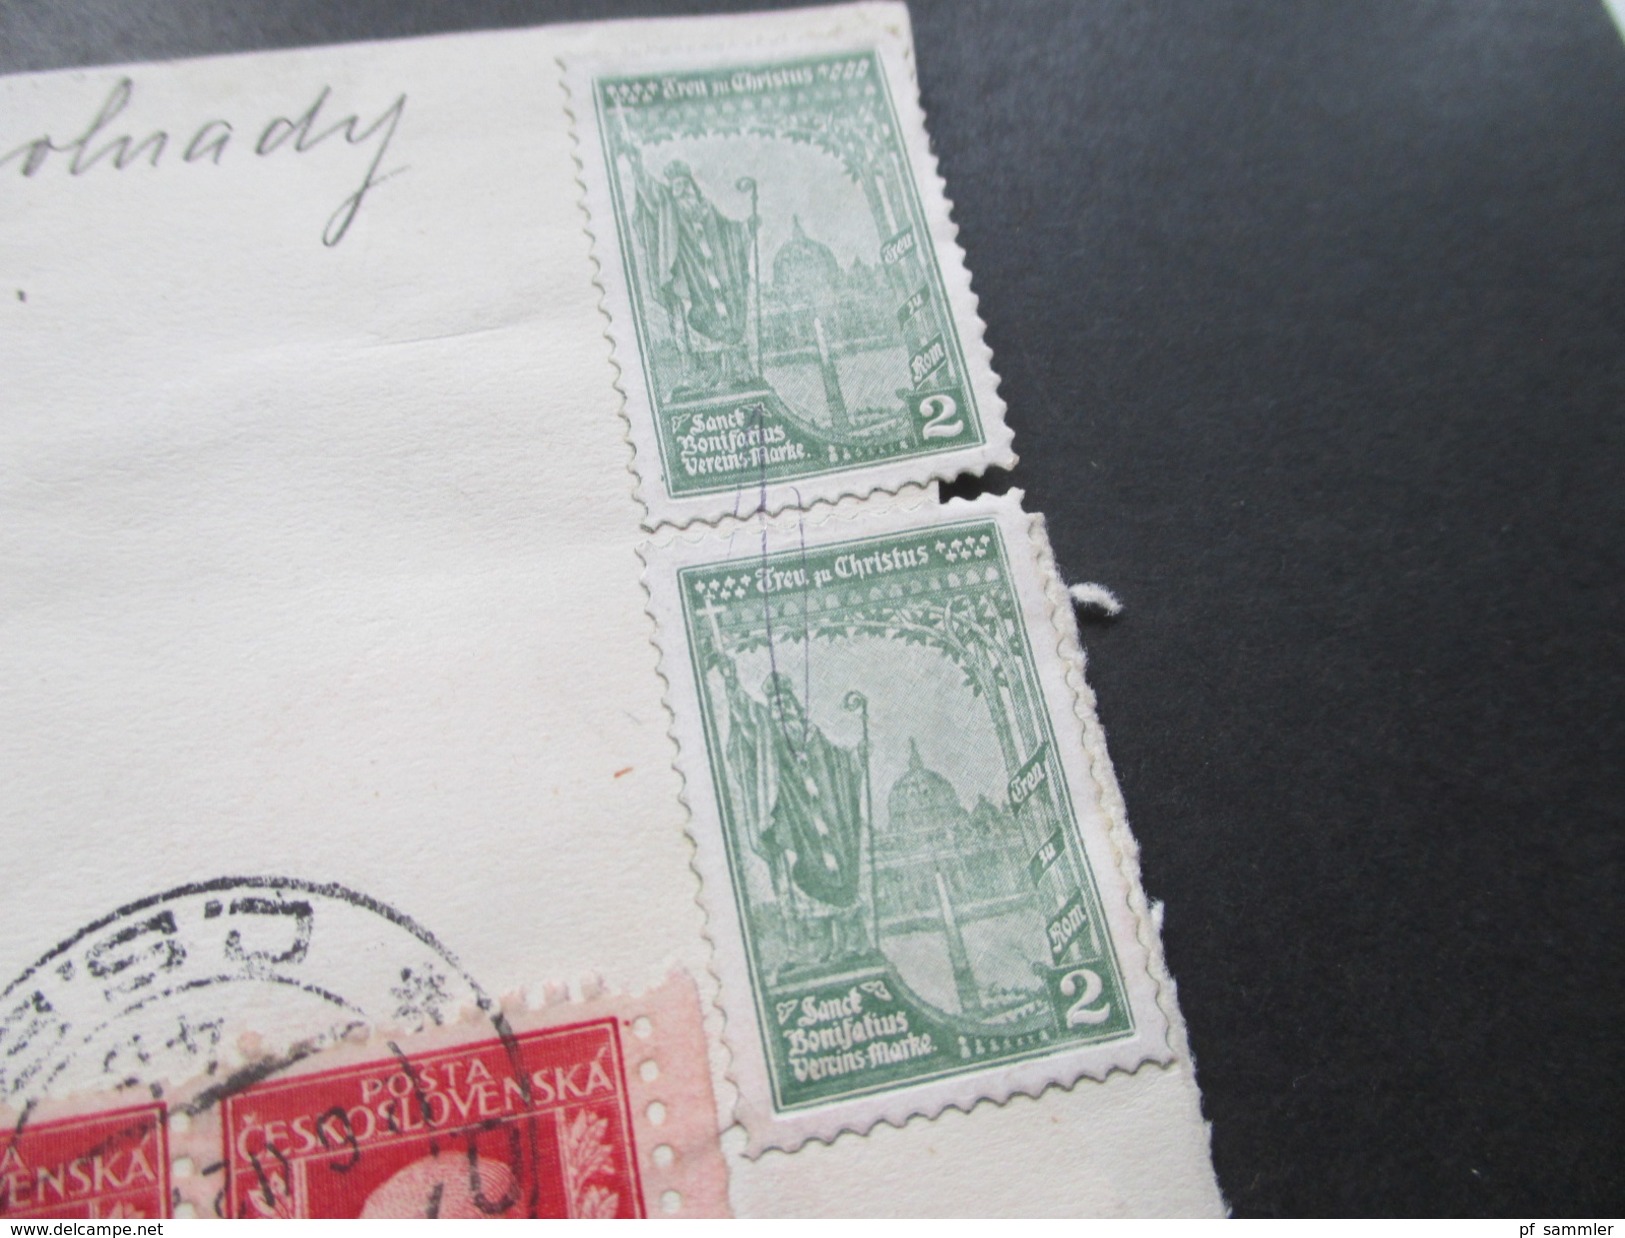 CSSR / Prag 1927 Briefstück Mit 4 Vignetten Treu Zu Christus Sanct Bonifatius Vereins Marke + 6er Streifen Marken! - Christendom